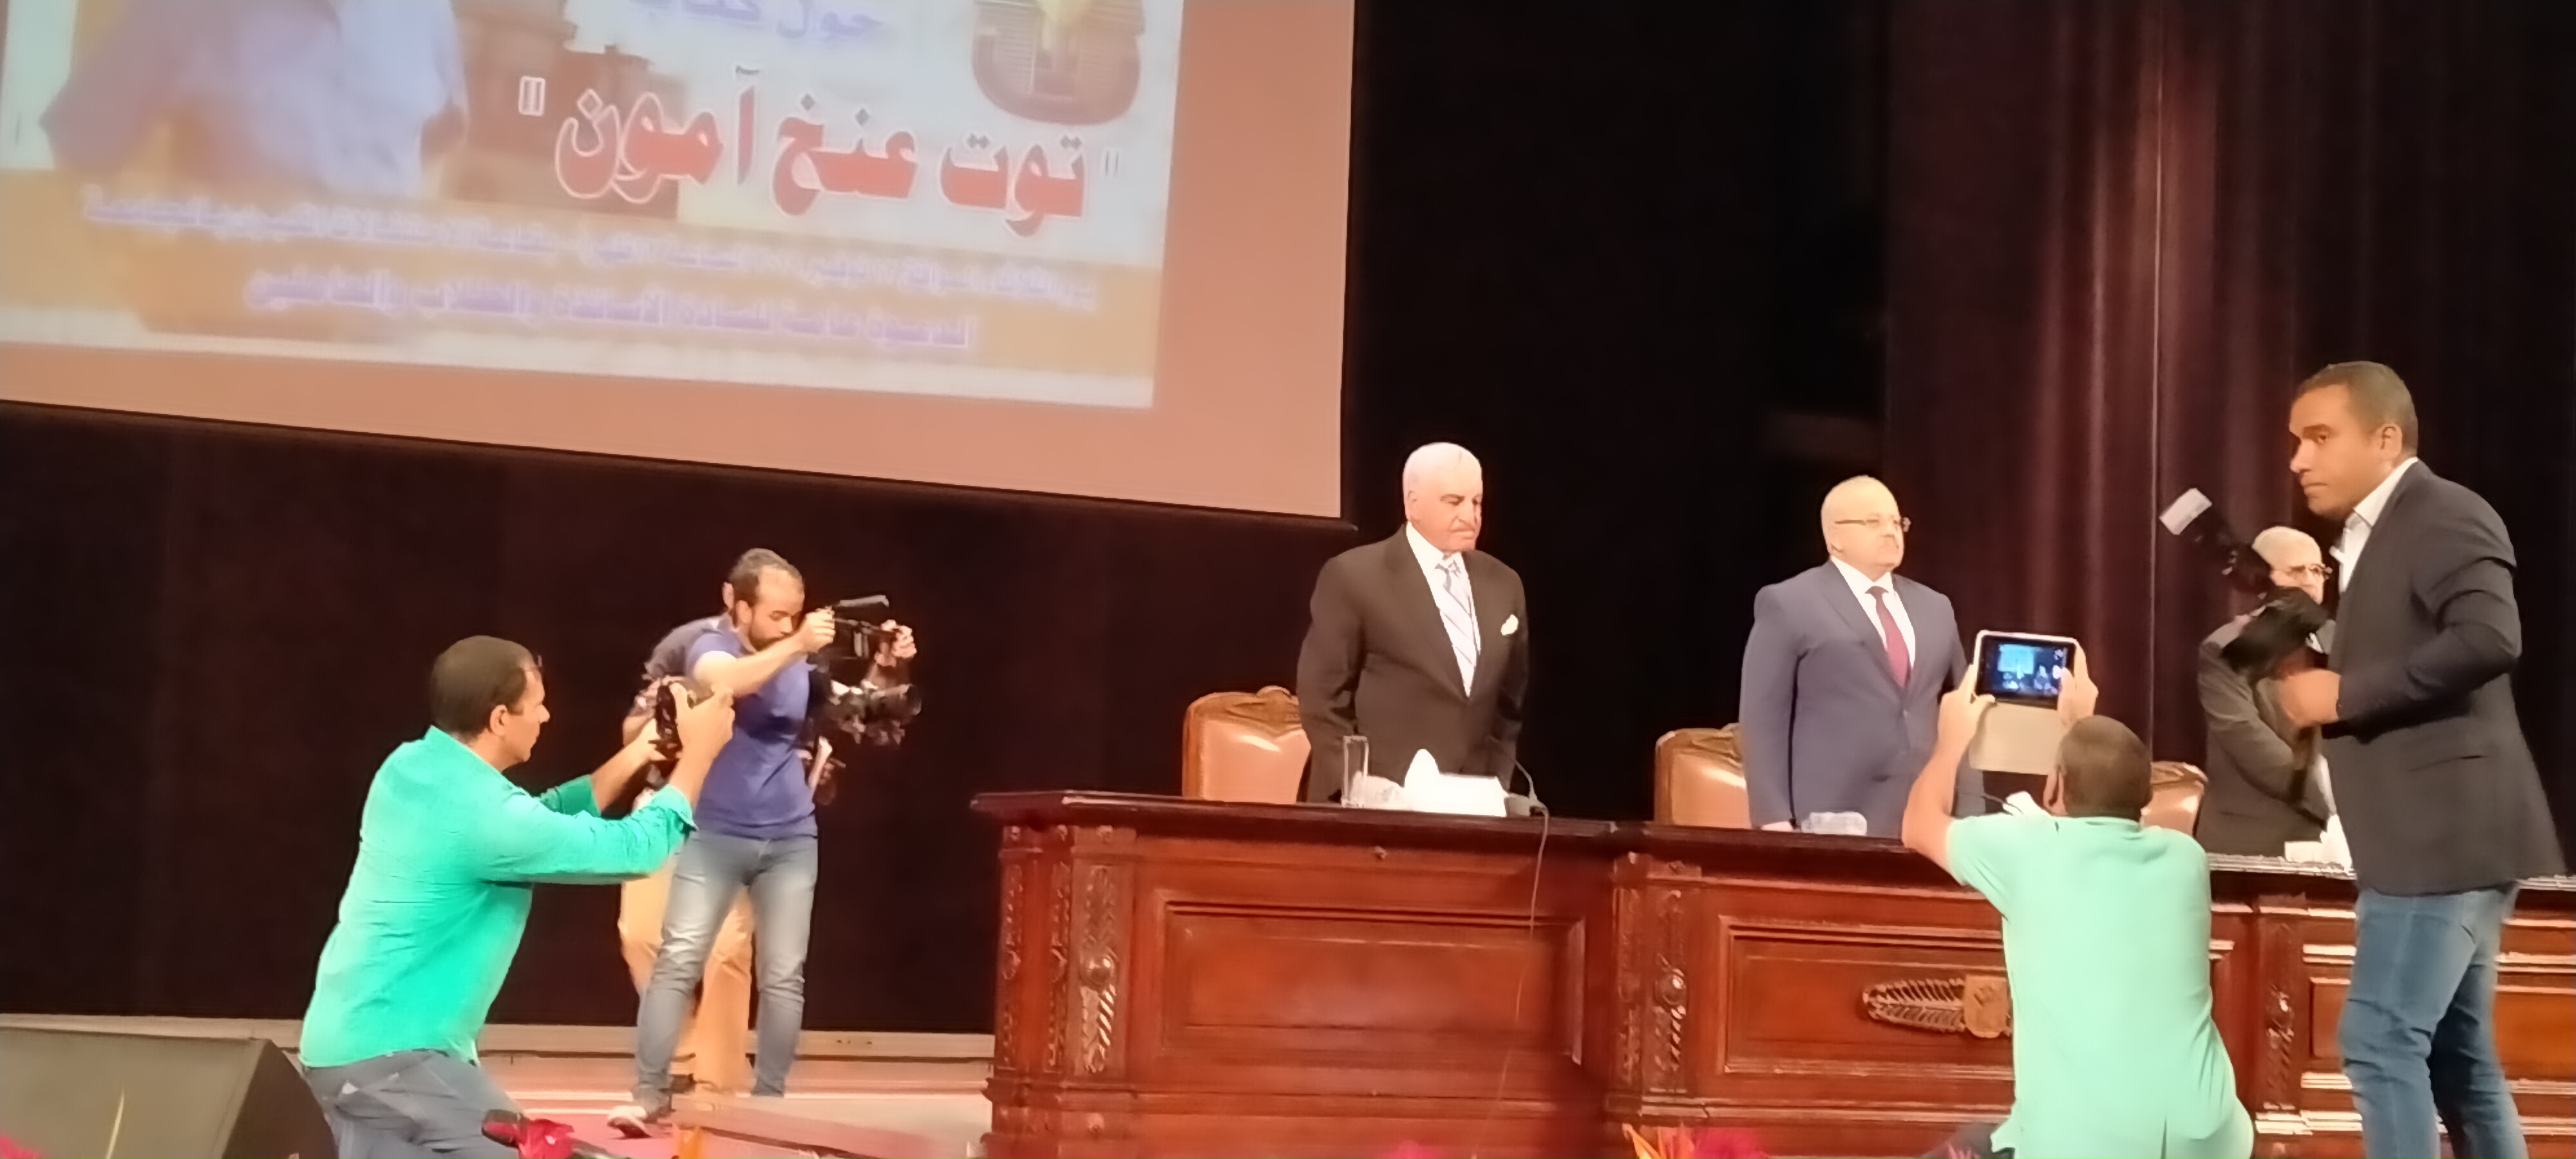 المحاضرة التى تنظمها جامعة القاهرة بحضور الدكتور زاهى حواس  (2)